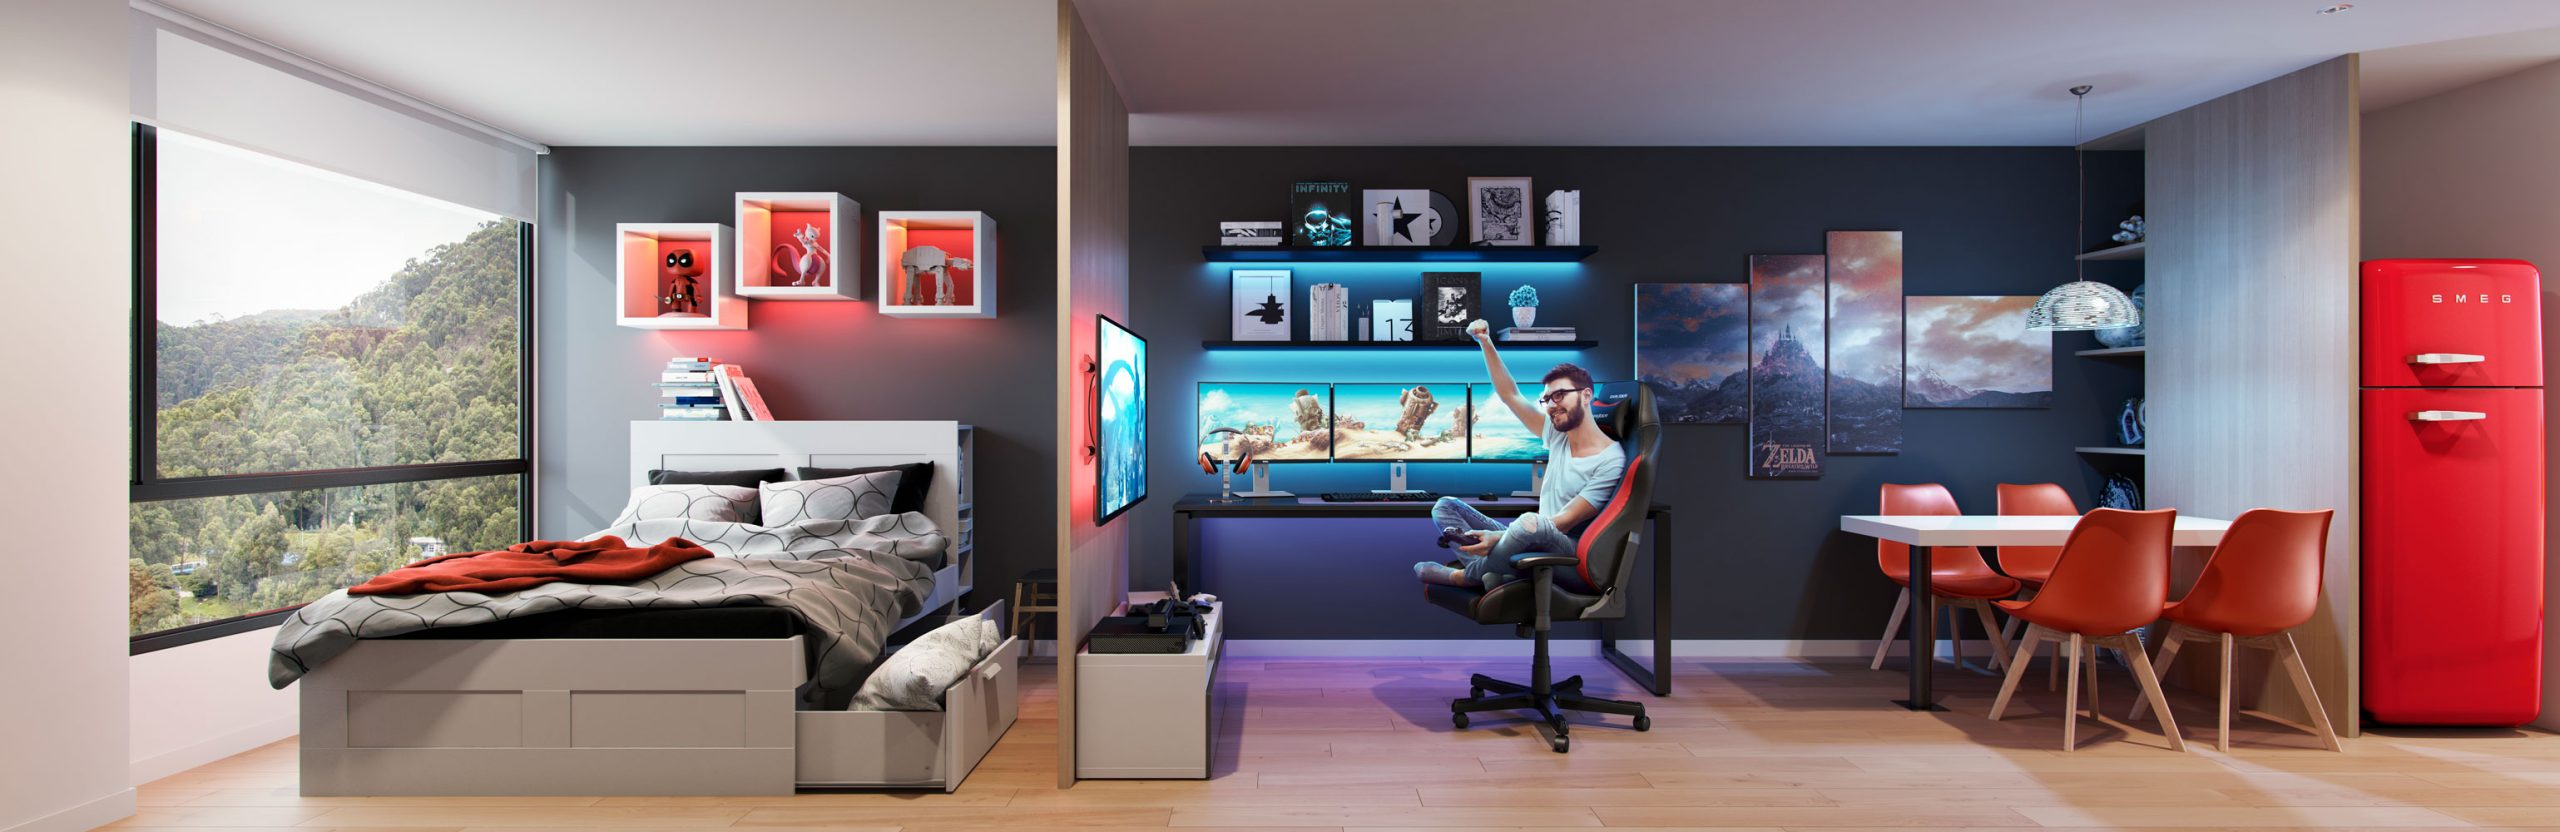 apartamento modelo gamer view63